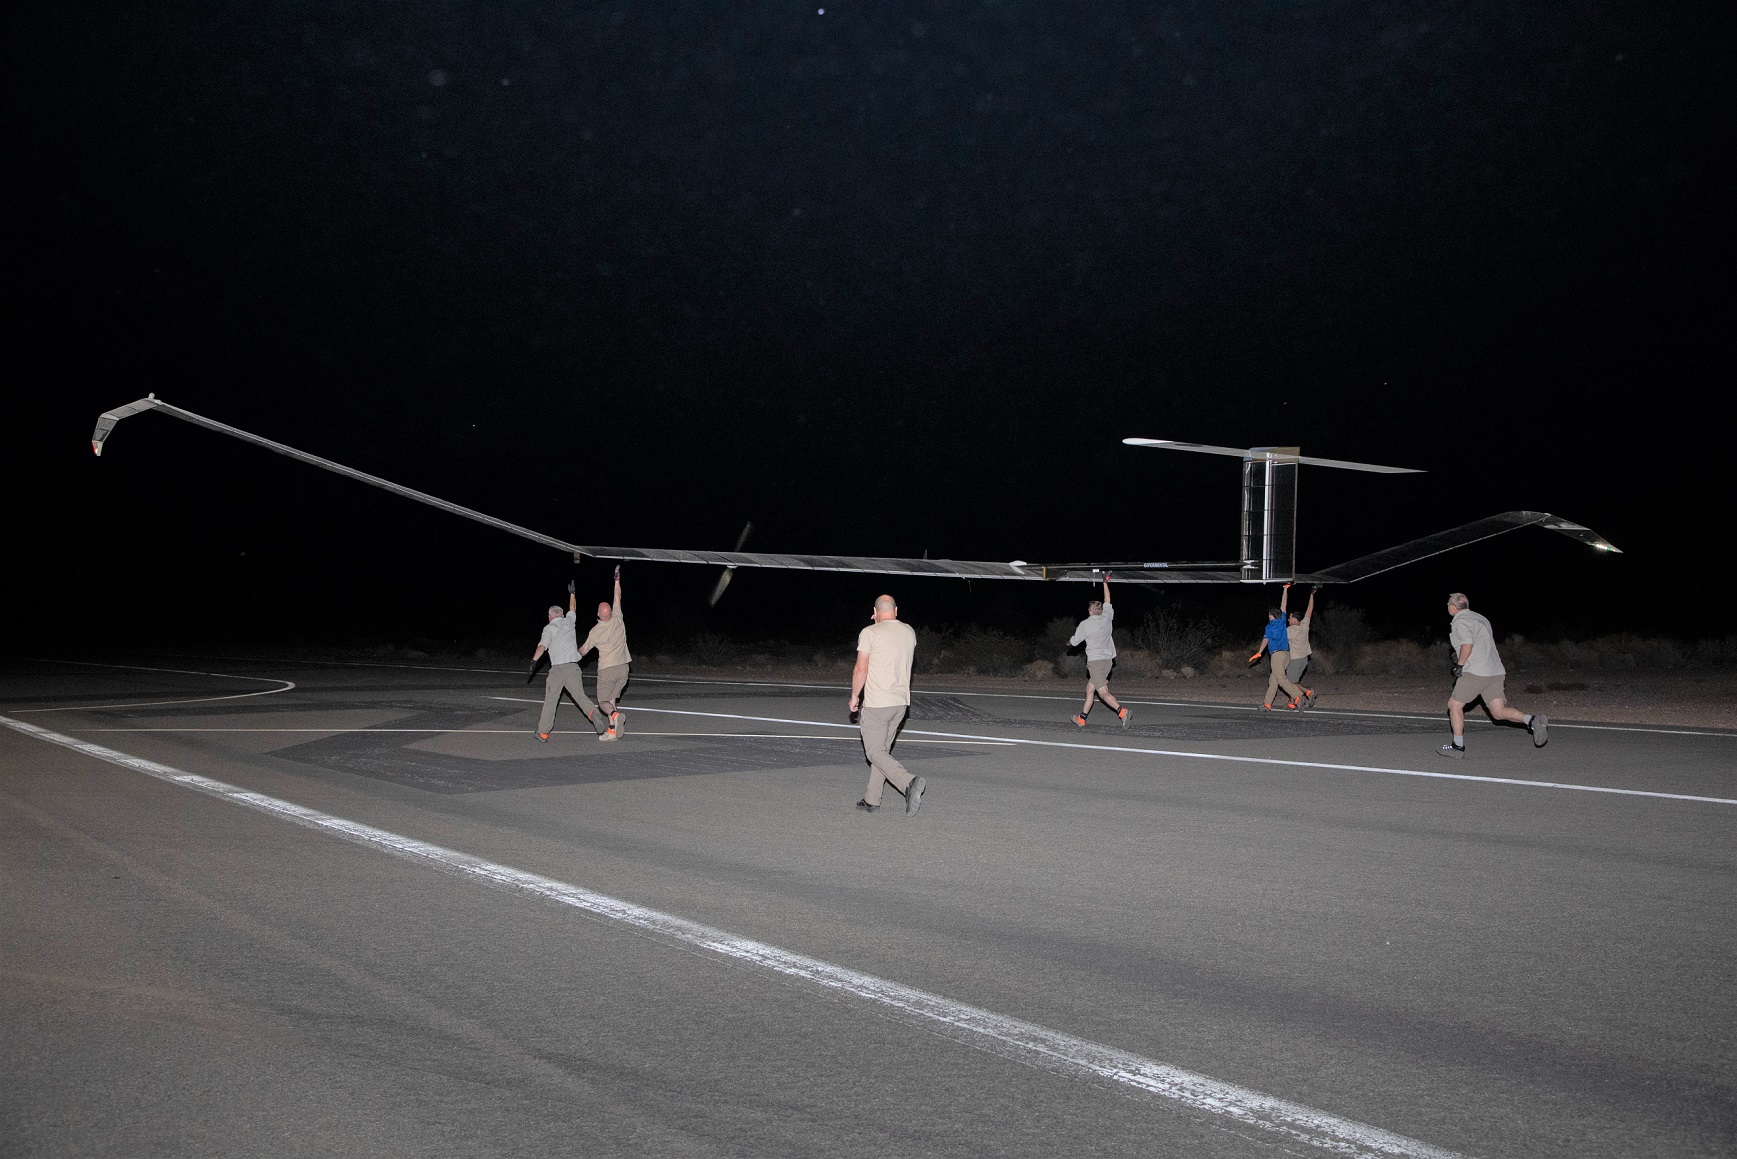 U.S. Army testet Stratosphären-Drohne, die 36 Tage lang über der Erde flog